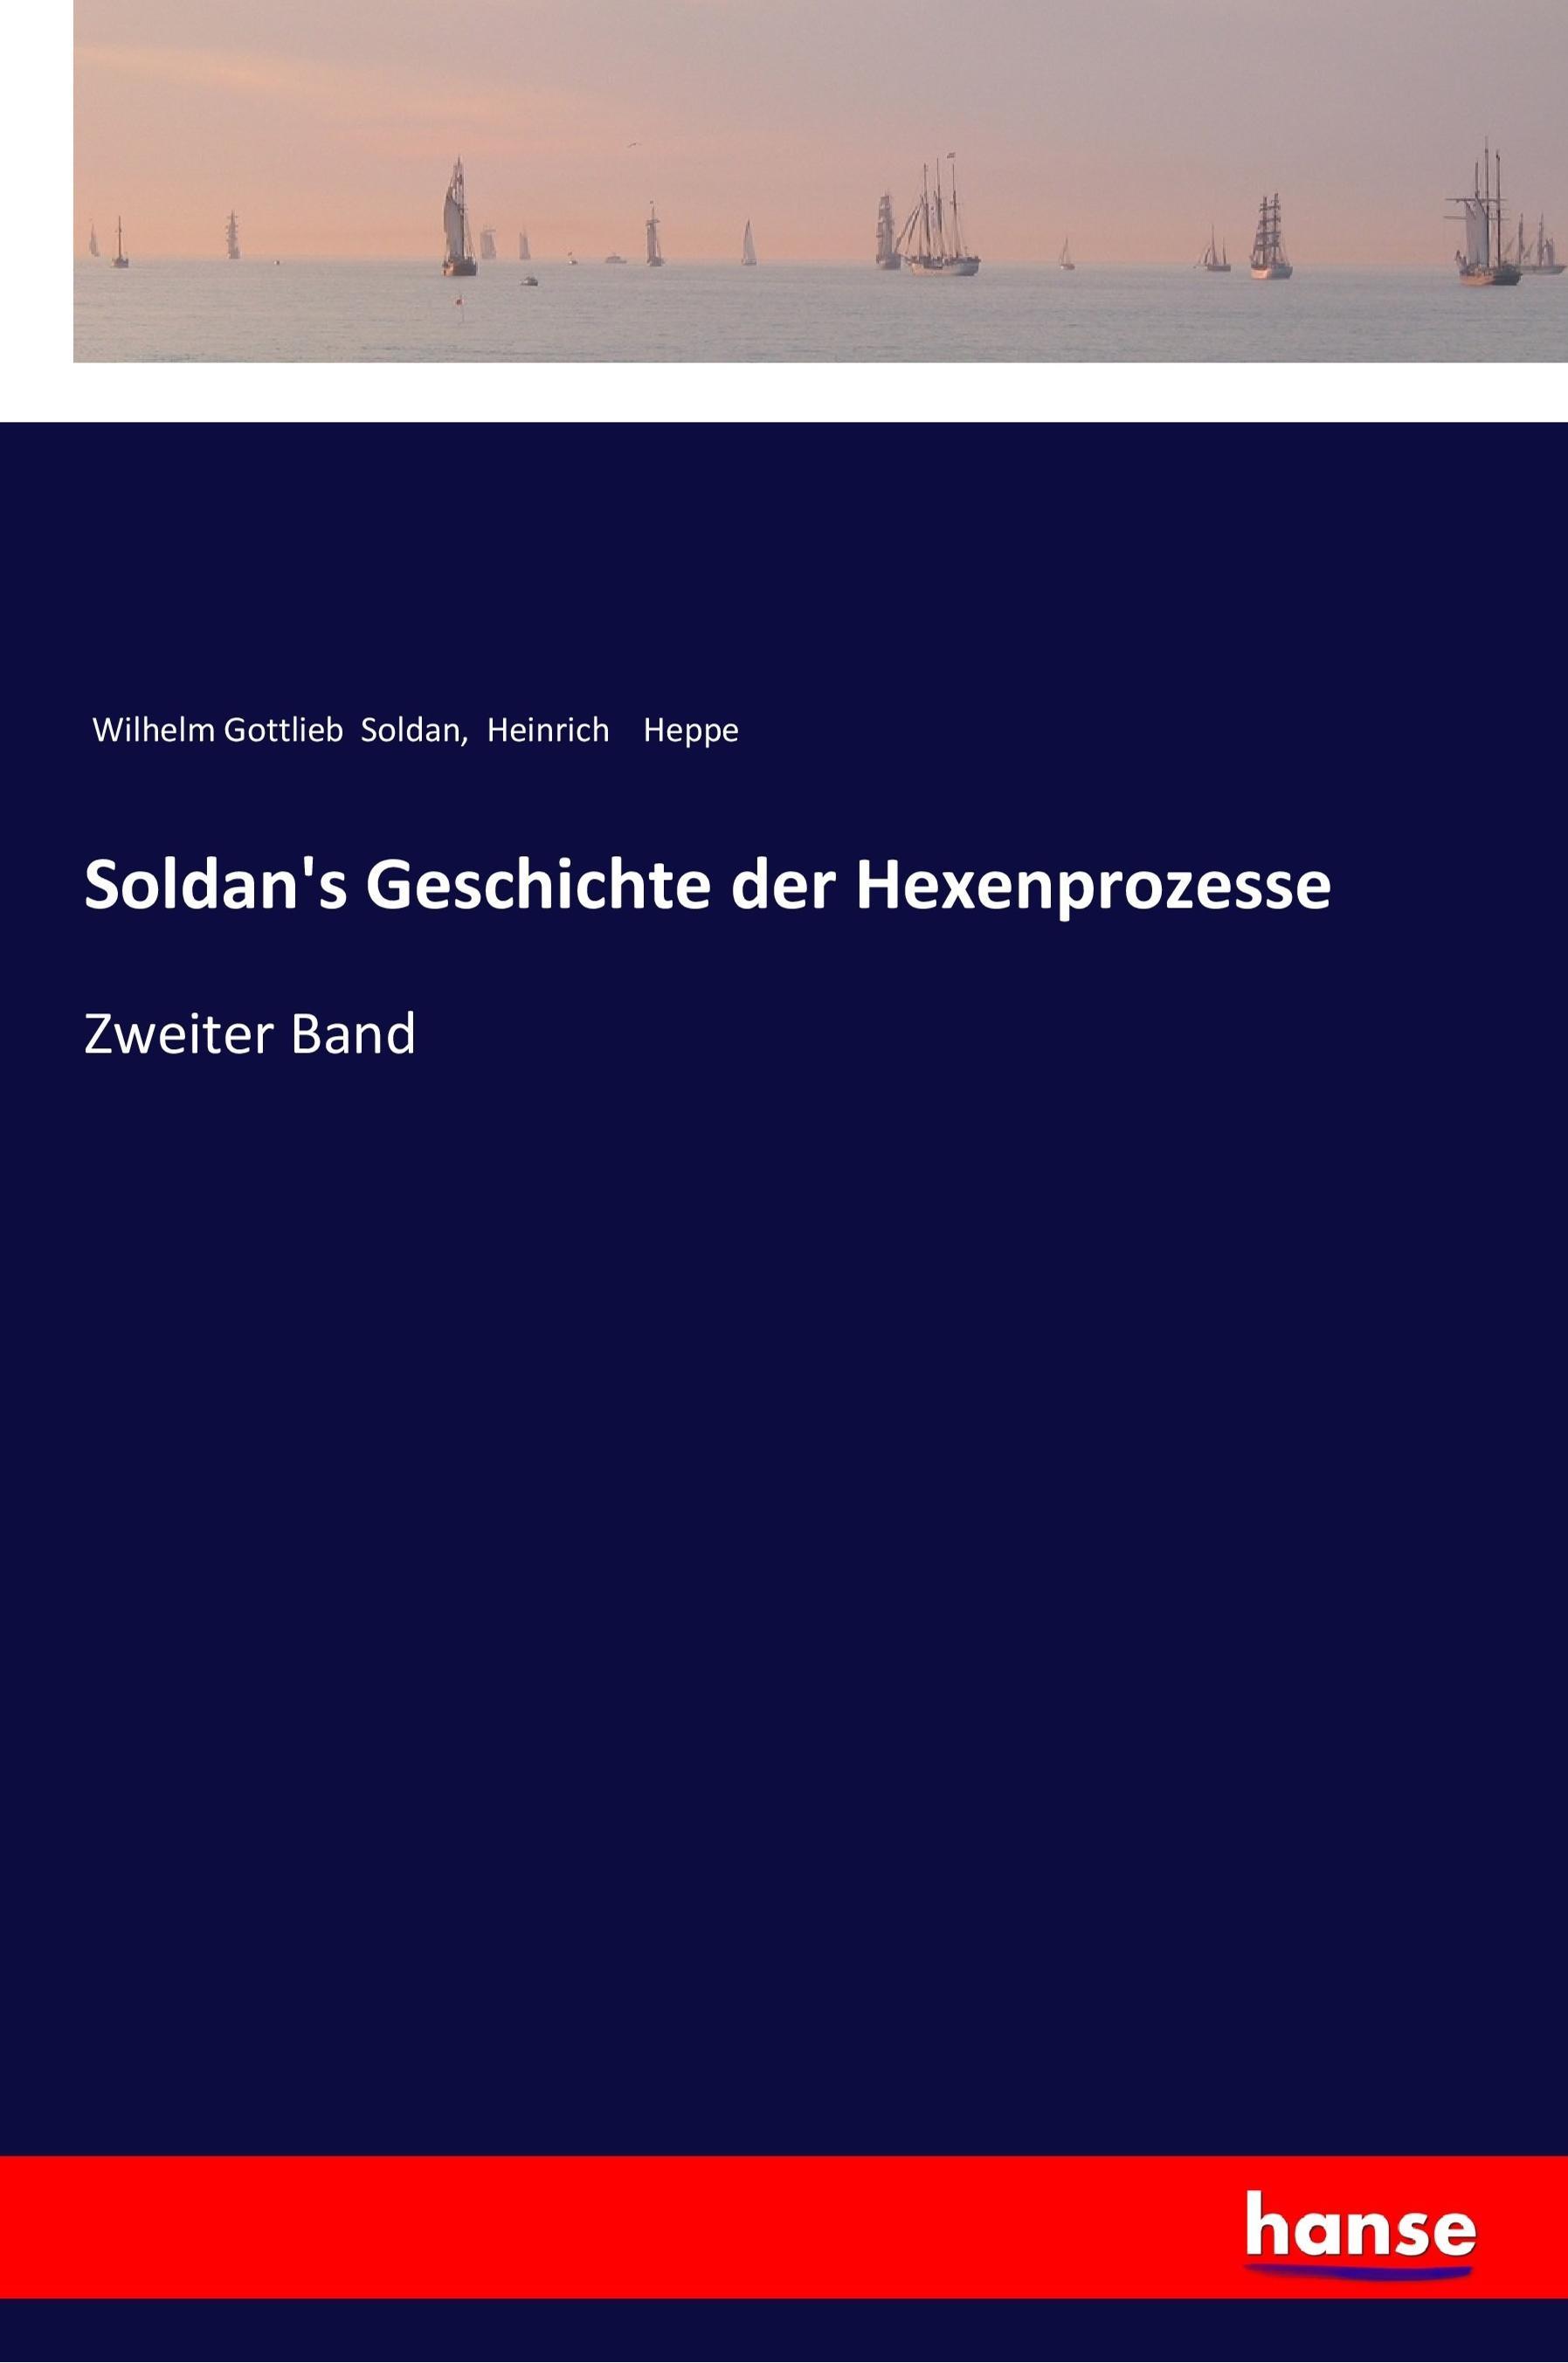 Soldan's Geschichte der Hexenprozesse / Zweiter Band / Wilhelm Gottlieb Soldan (u. a.) / Taschenbuch / Paperback / 528 S. / Deutsch / 2017 / hansebooks / EAN 9783337199296 - Soldan, Wilhelm Gottlieb